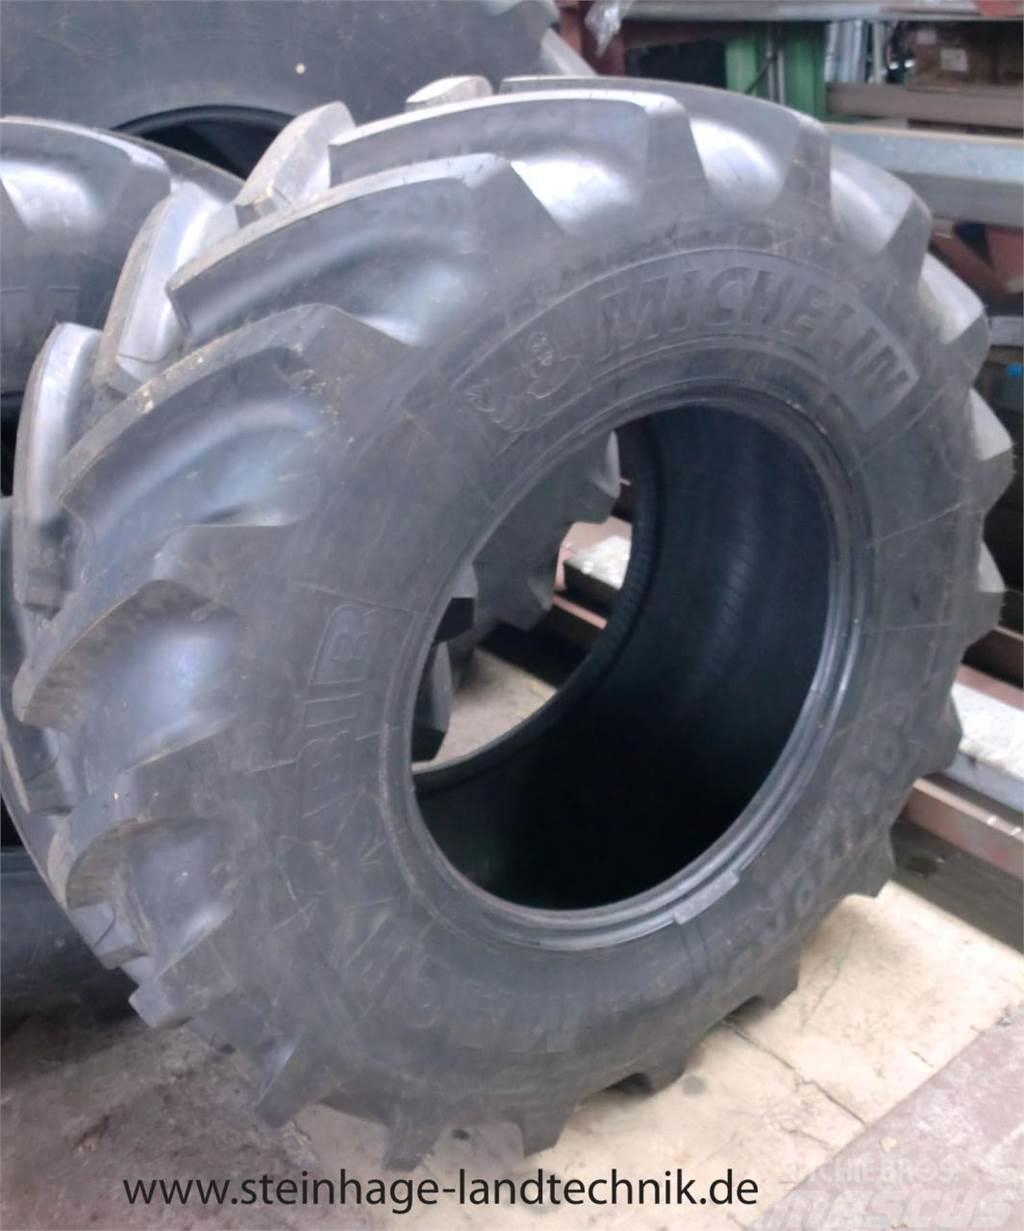 Michelin 600/70R30 Mach X Bib Tyres, wheels and rims